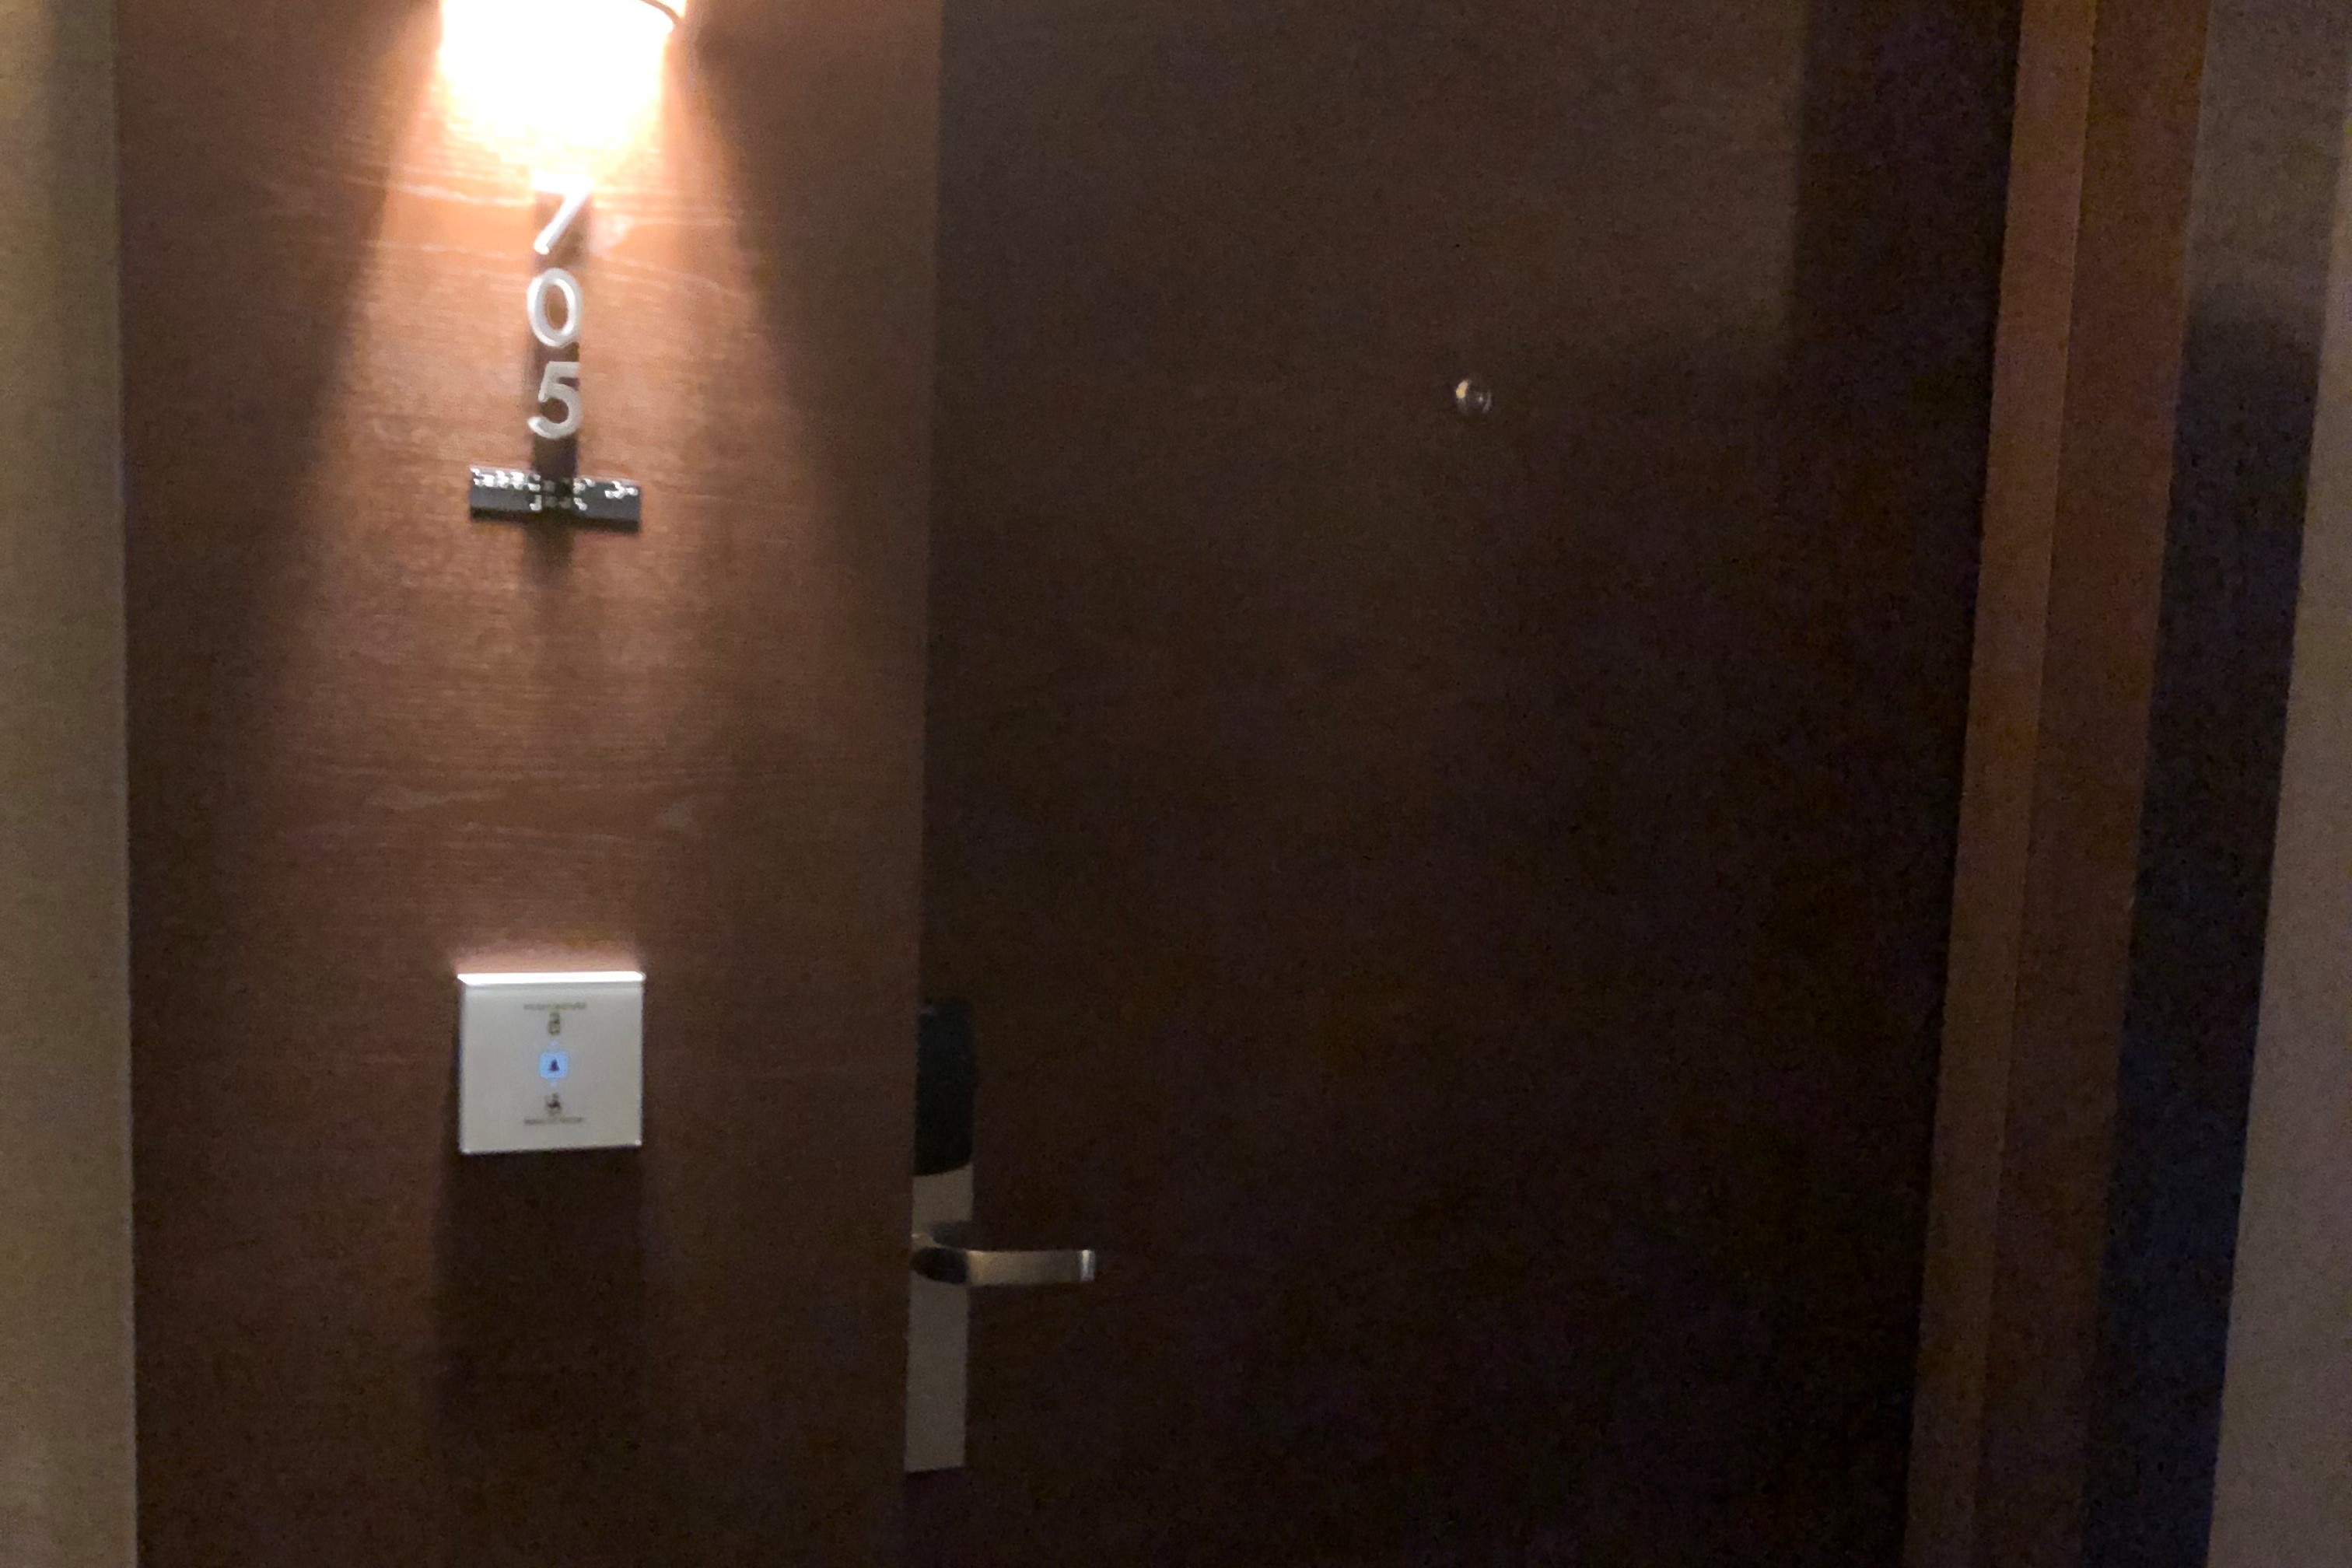 객실 입구0 : 초인벨이 설치되어 있는 코트야드 메리어트 서울 남대문 호텔 객실 입구 전경